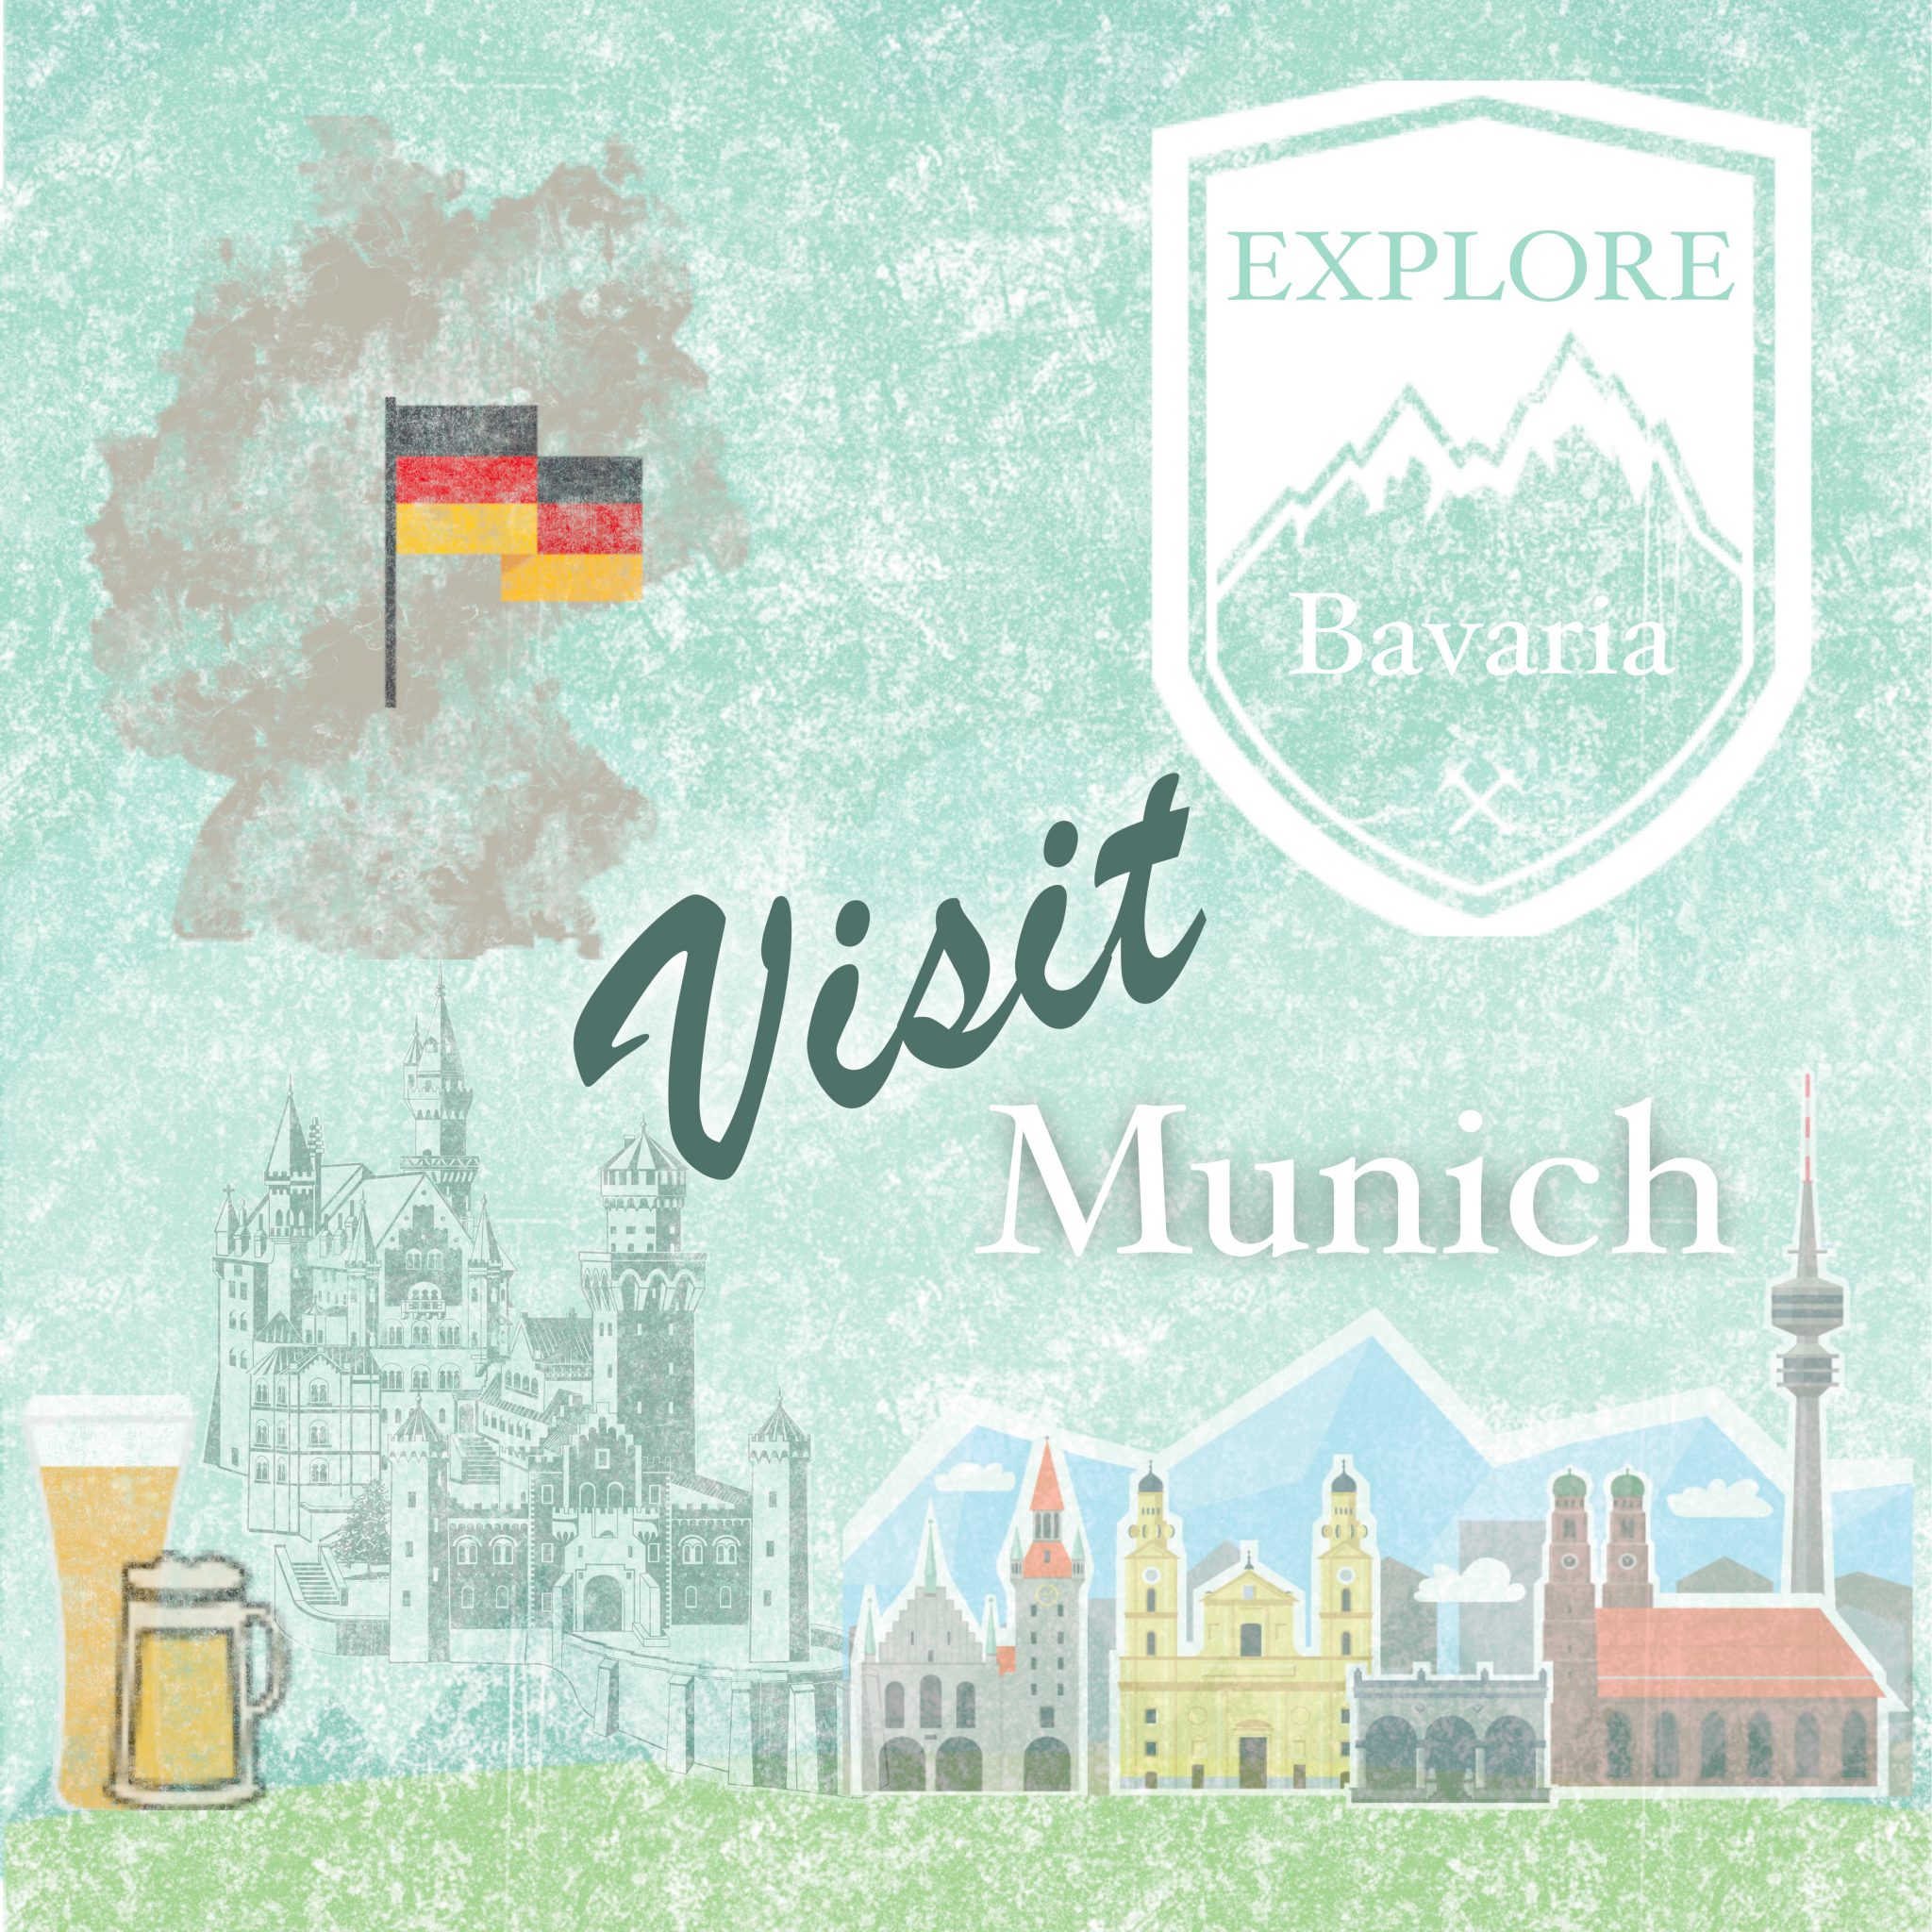 Globe Trekking: Visit Munich